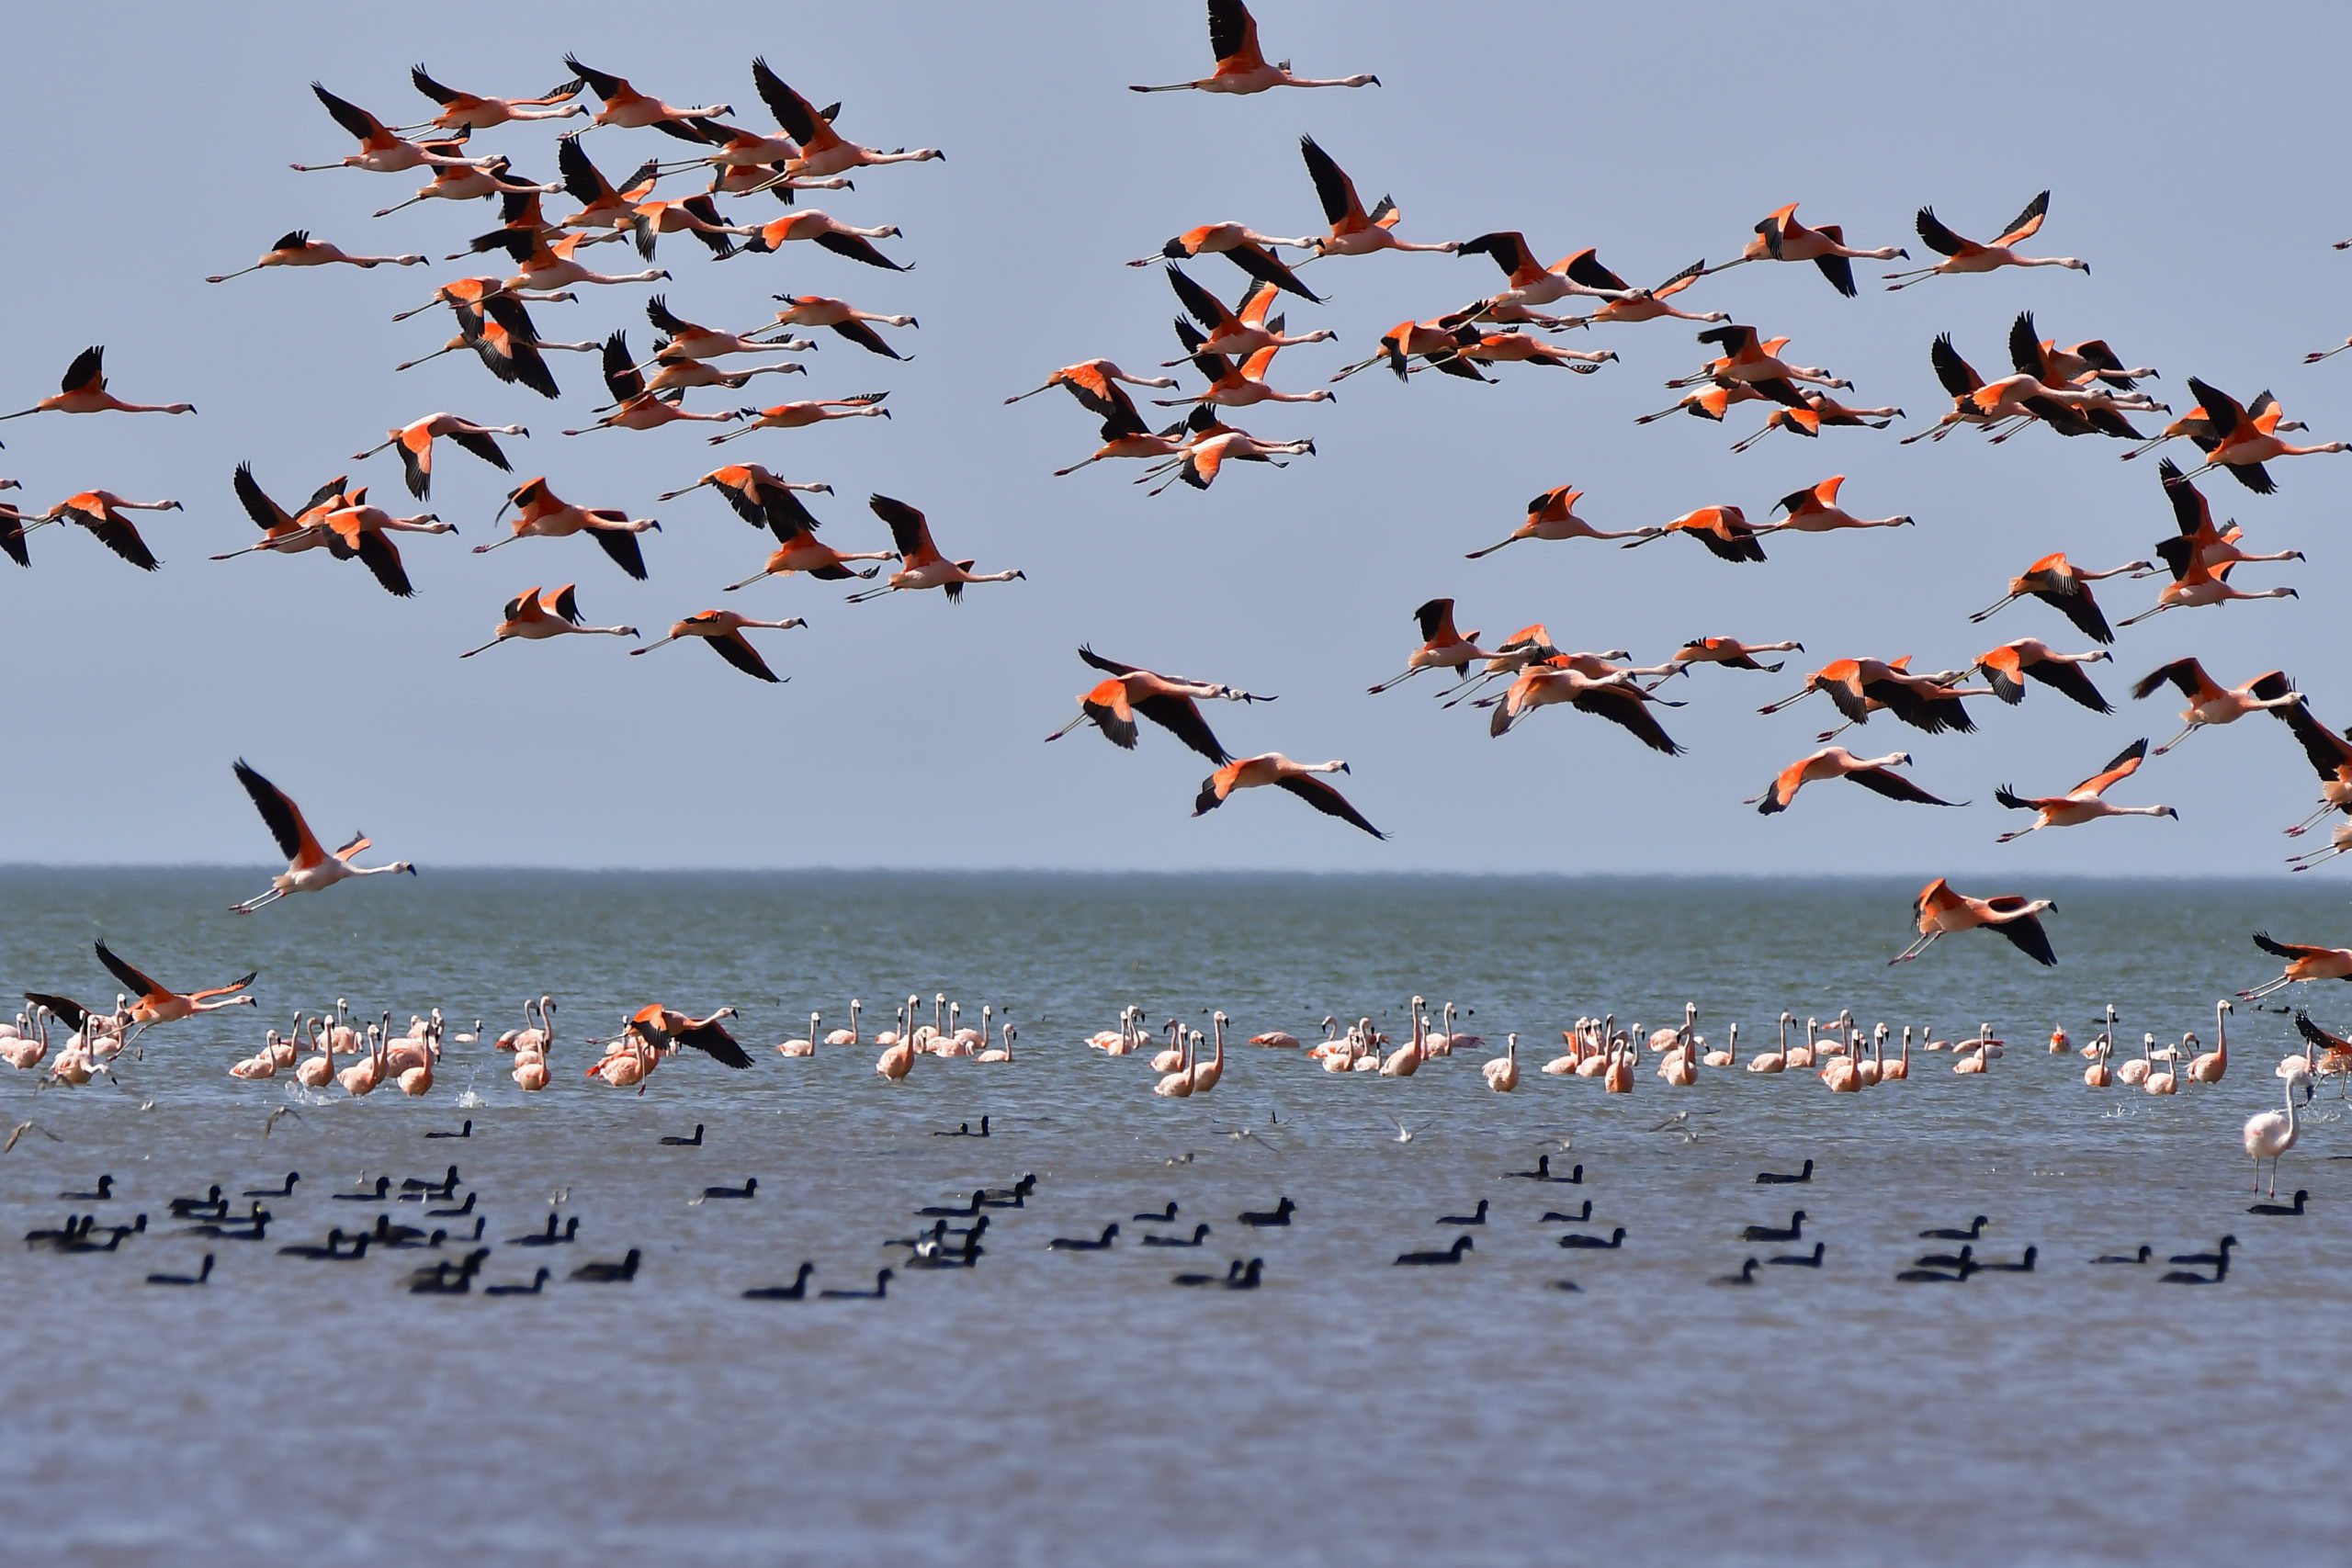 Una bandada colorida de flamingos toma su vuelo mientras otros flamingos se mantienen quietos a la distancia en medio de este espacio azul. Lago con una bandada de pájaros oscuros flotando en primer plano